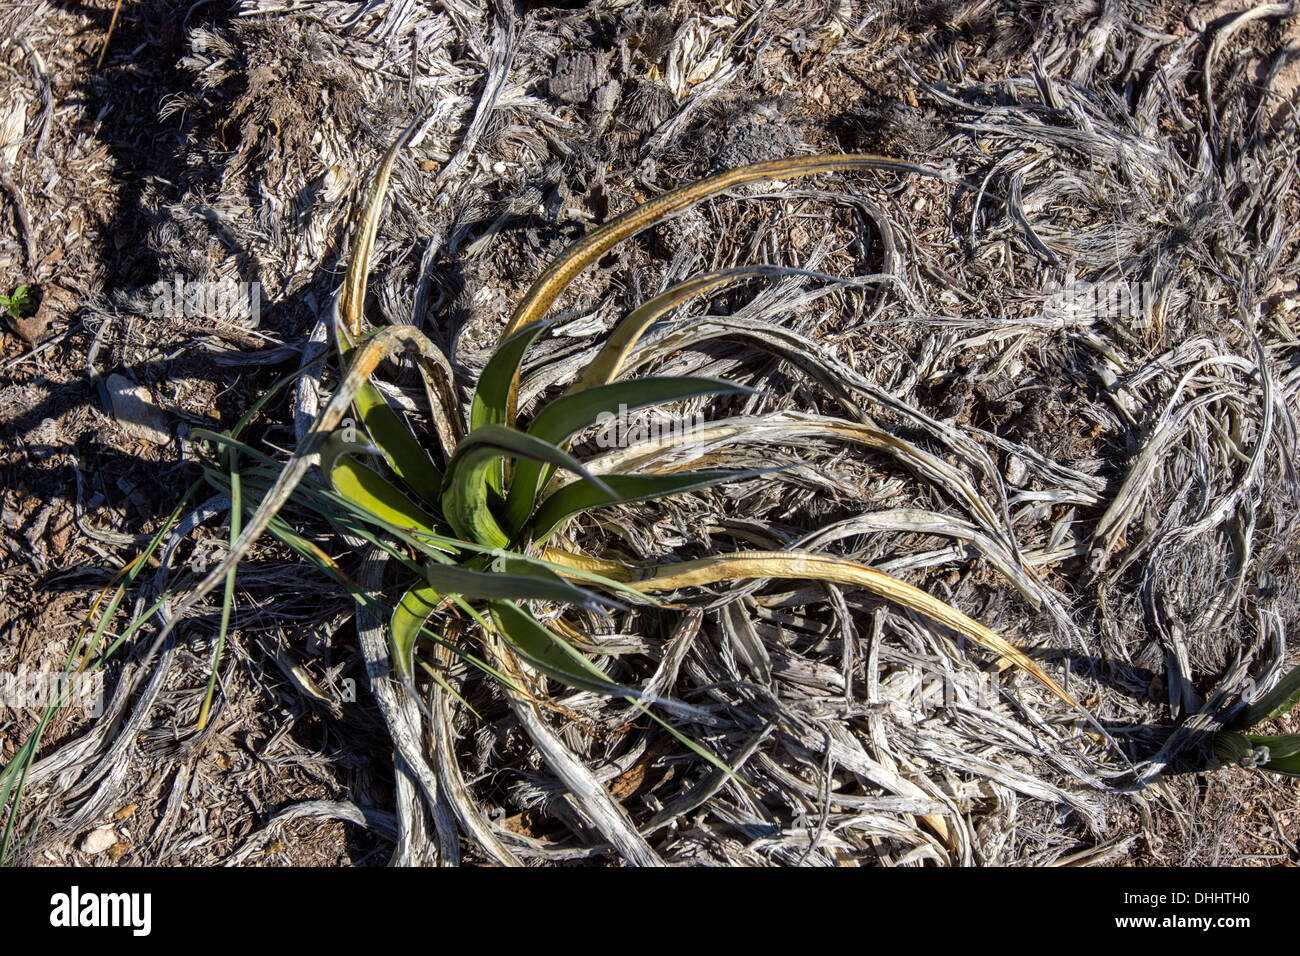 A los muertos y moribundos agave lechuguilla cactus en el lejano oeste de Texas, en la región de Big Bend, en el extremo norte del desierto Chiahuhuan. Foto de stock